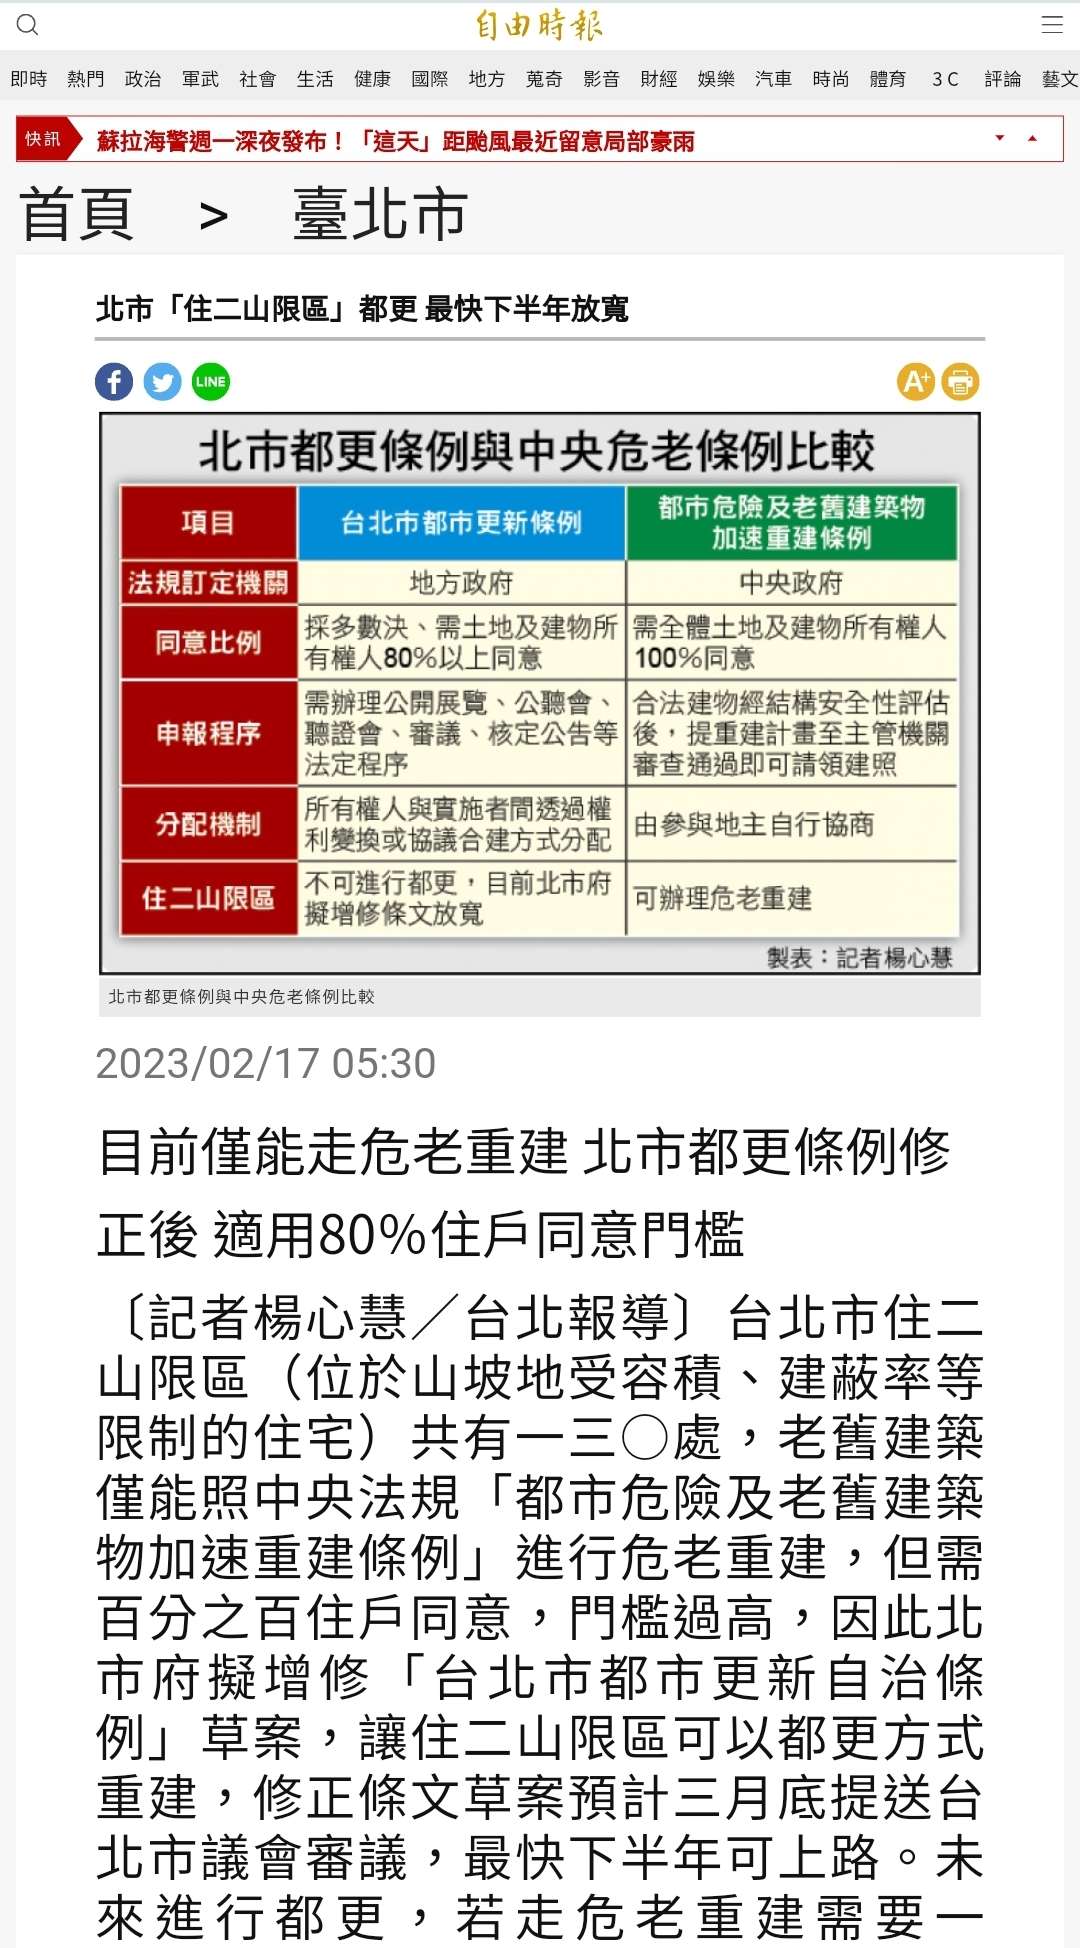 【不動產新聞】台北市「住二山限區」都更 最快下半年放寬